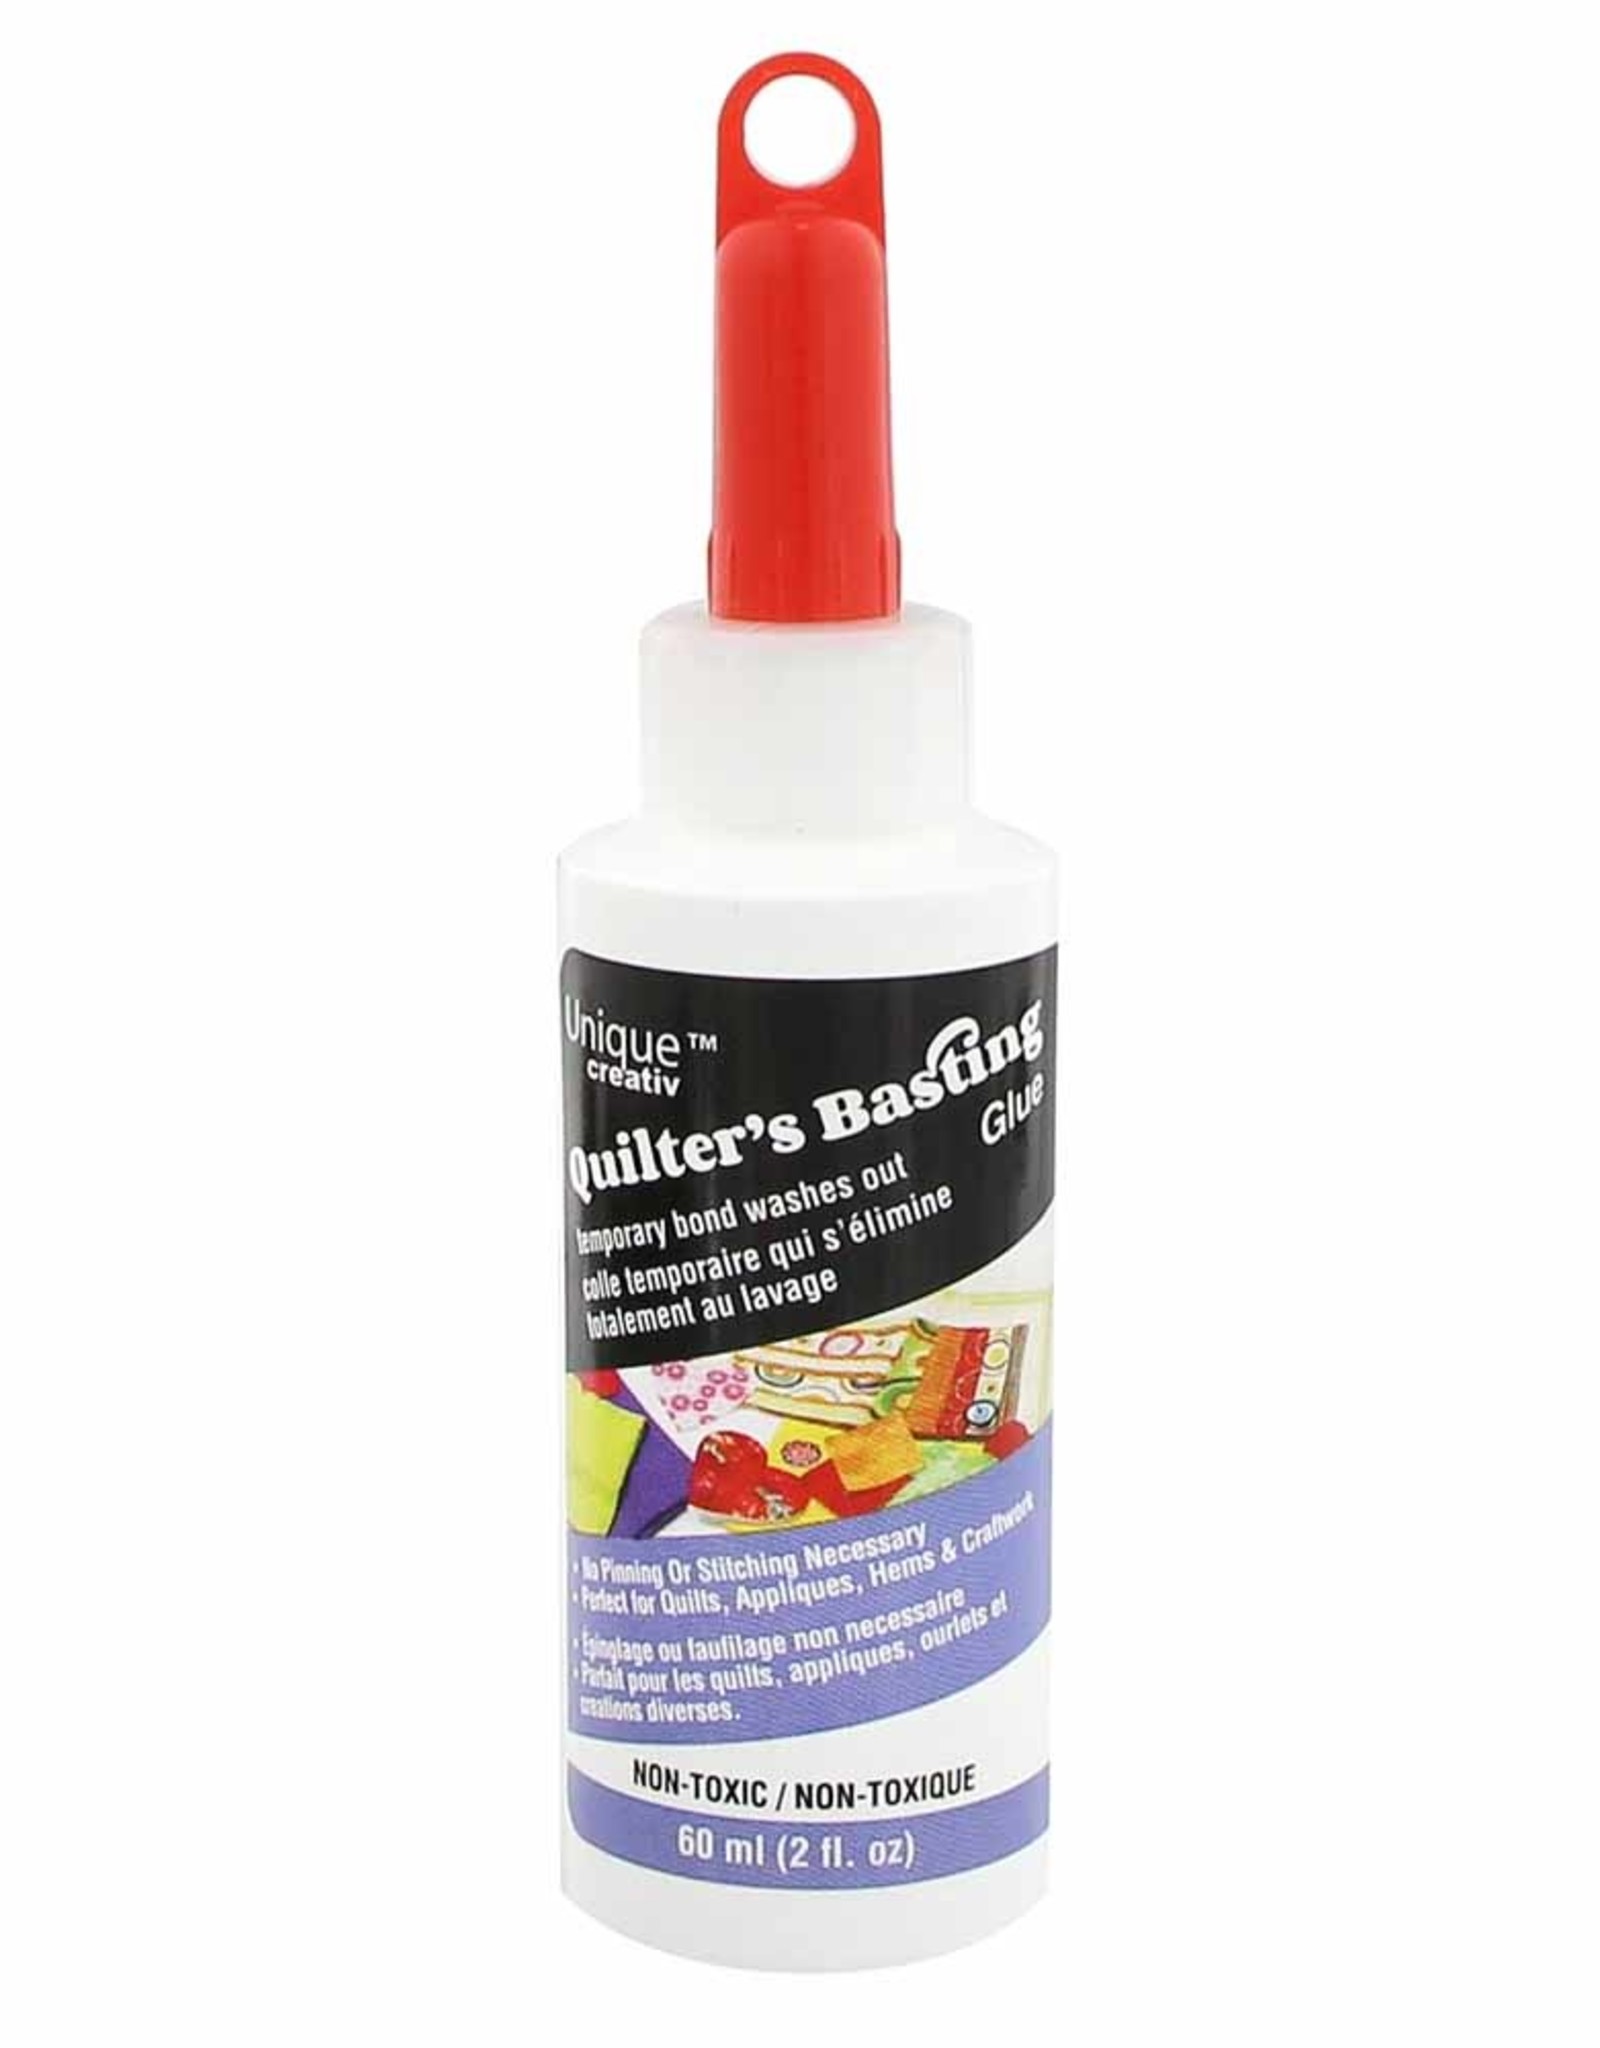 Quilter's Basting Glue 60 ml